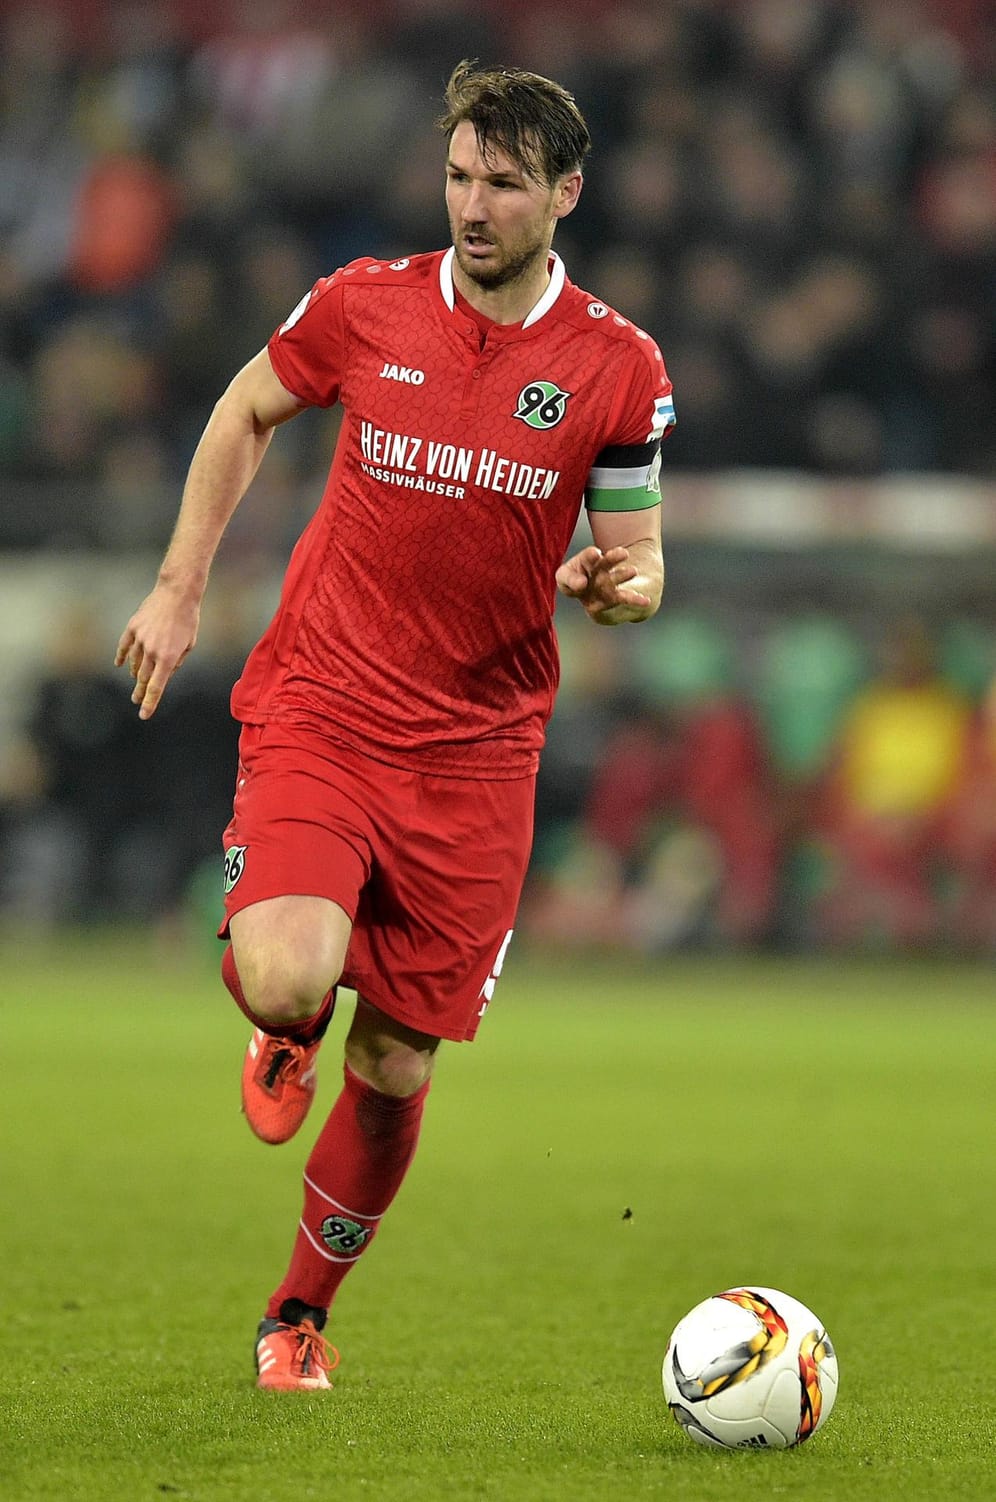 Der 32-jährige Abwehrspieler Christian Schulz spielt bereits seit 2007 bei Hannover 96 und war in der Hinrunde fester Bestandteil in der Startelf.